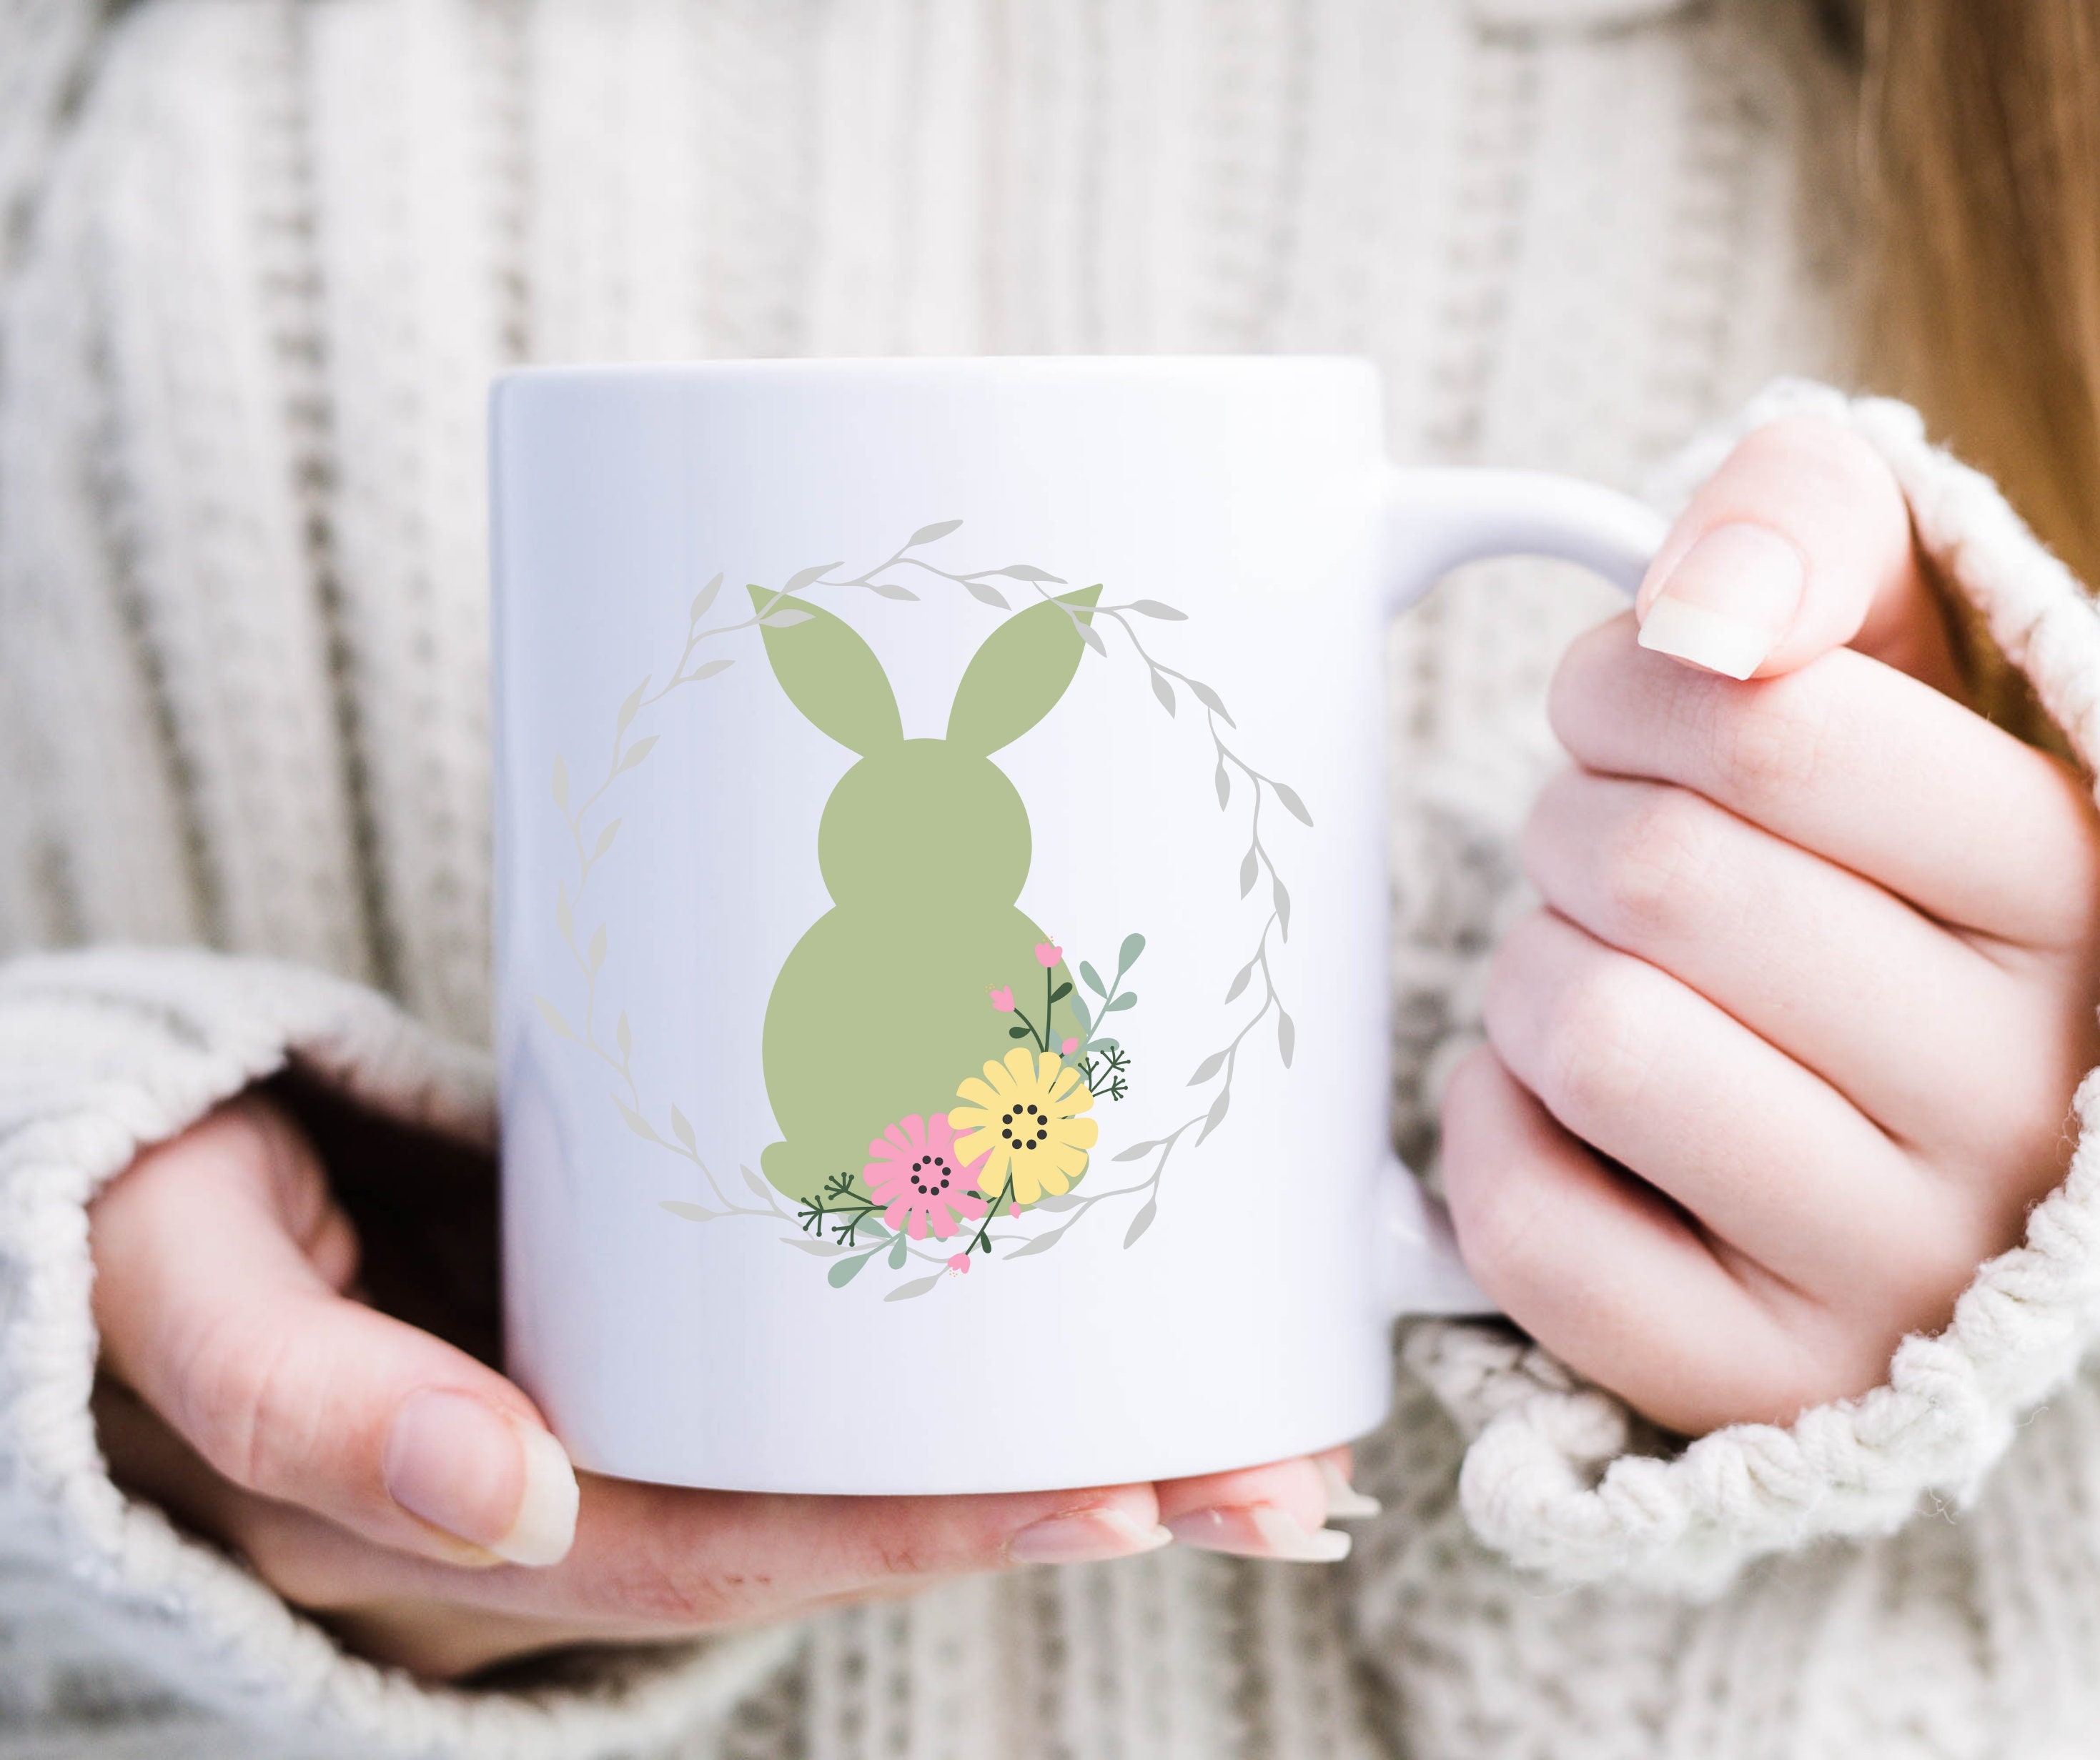 Discover Easter Mug Spring Floral Mug, Easter Bunny